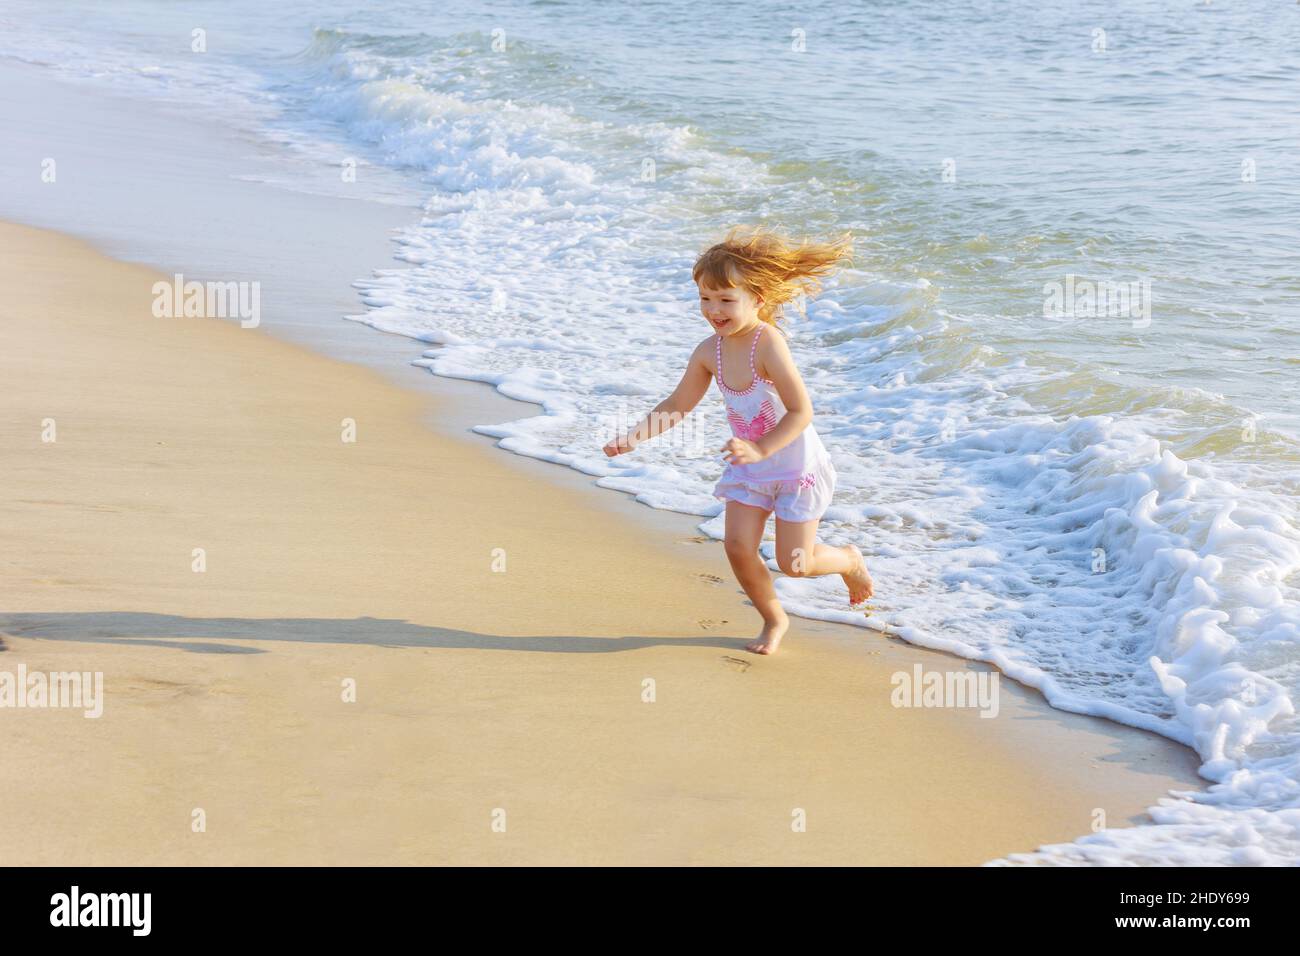 girl, happy, beach, girls, happies, beaches, seaside Stock Photo